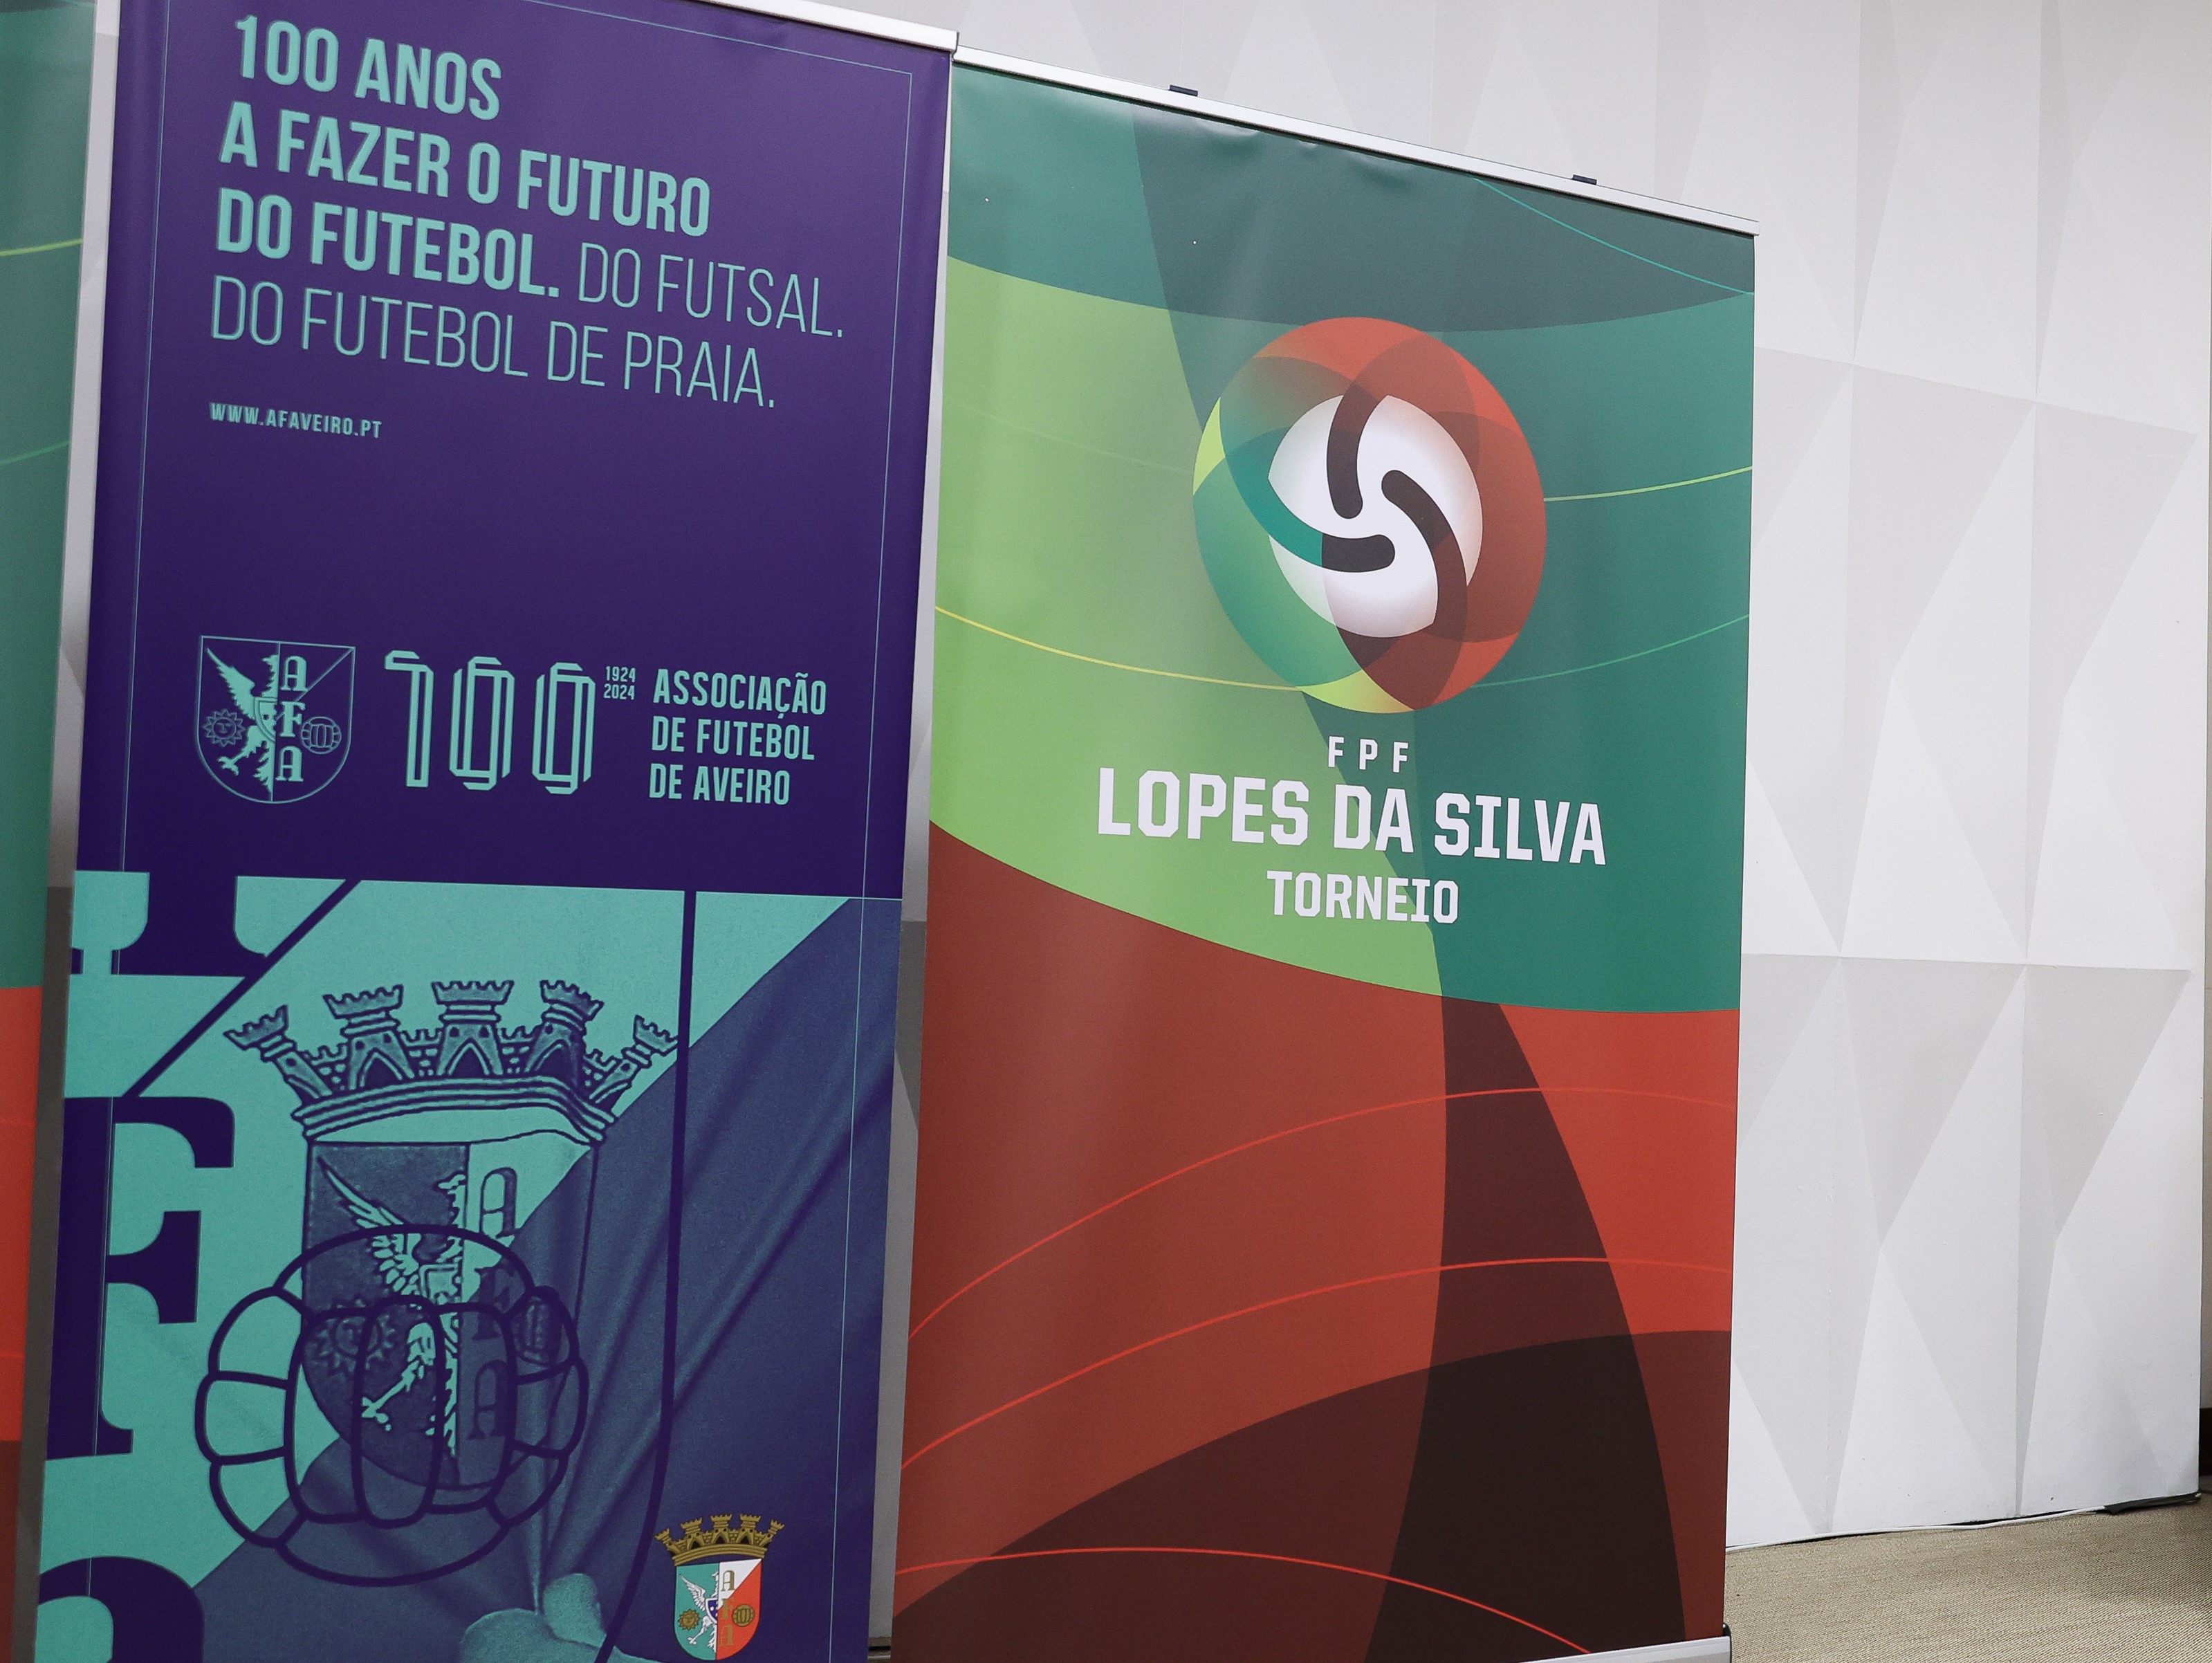 Associações reunidas celebram Lopes da Silva